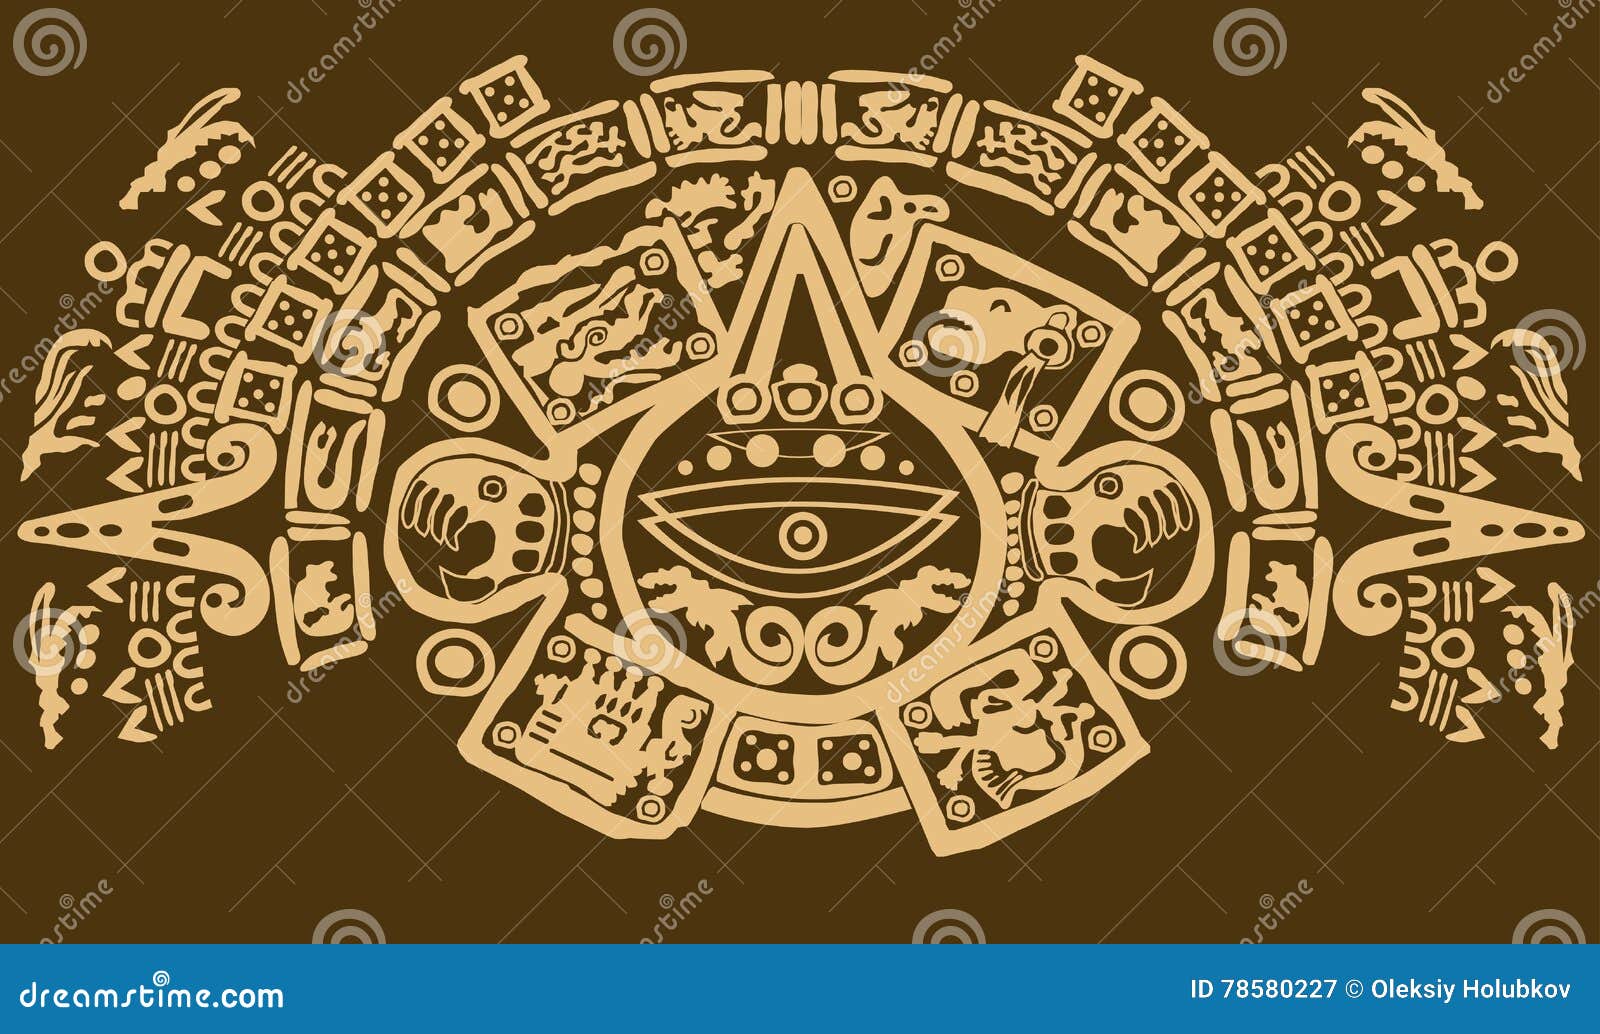 Fermez-vous vers le haut du tir des symboles maya antiques. Une fin vers le haut du tir de différents éléments et symboles maya antiques sur un fond brun